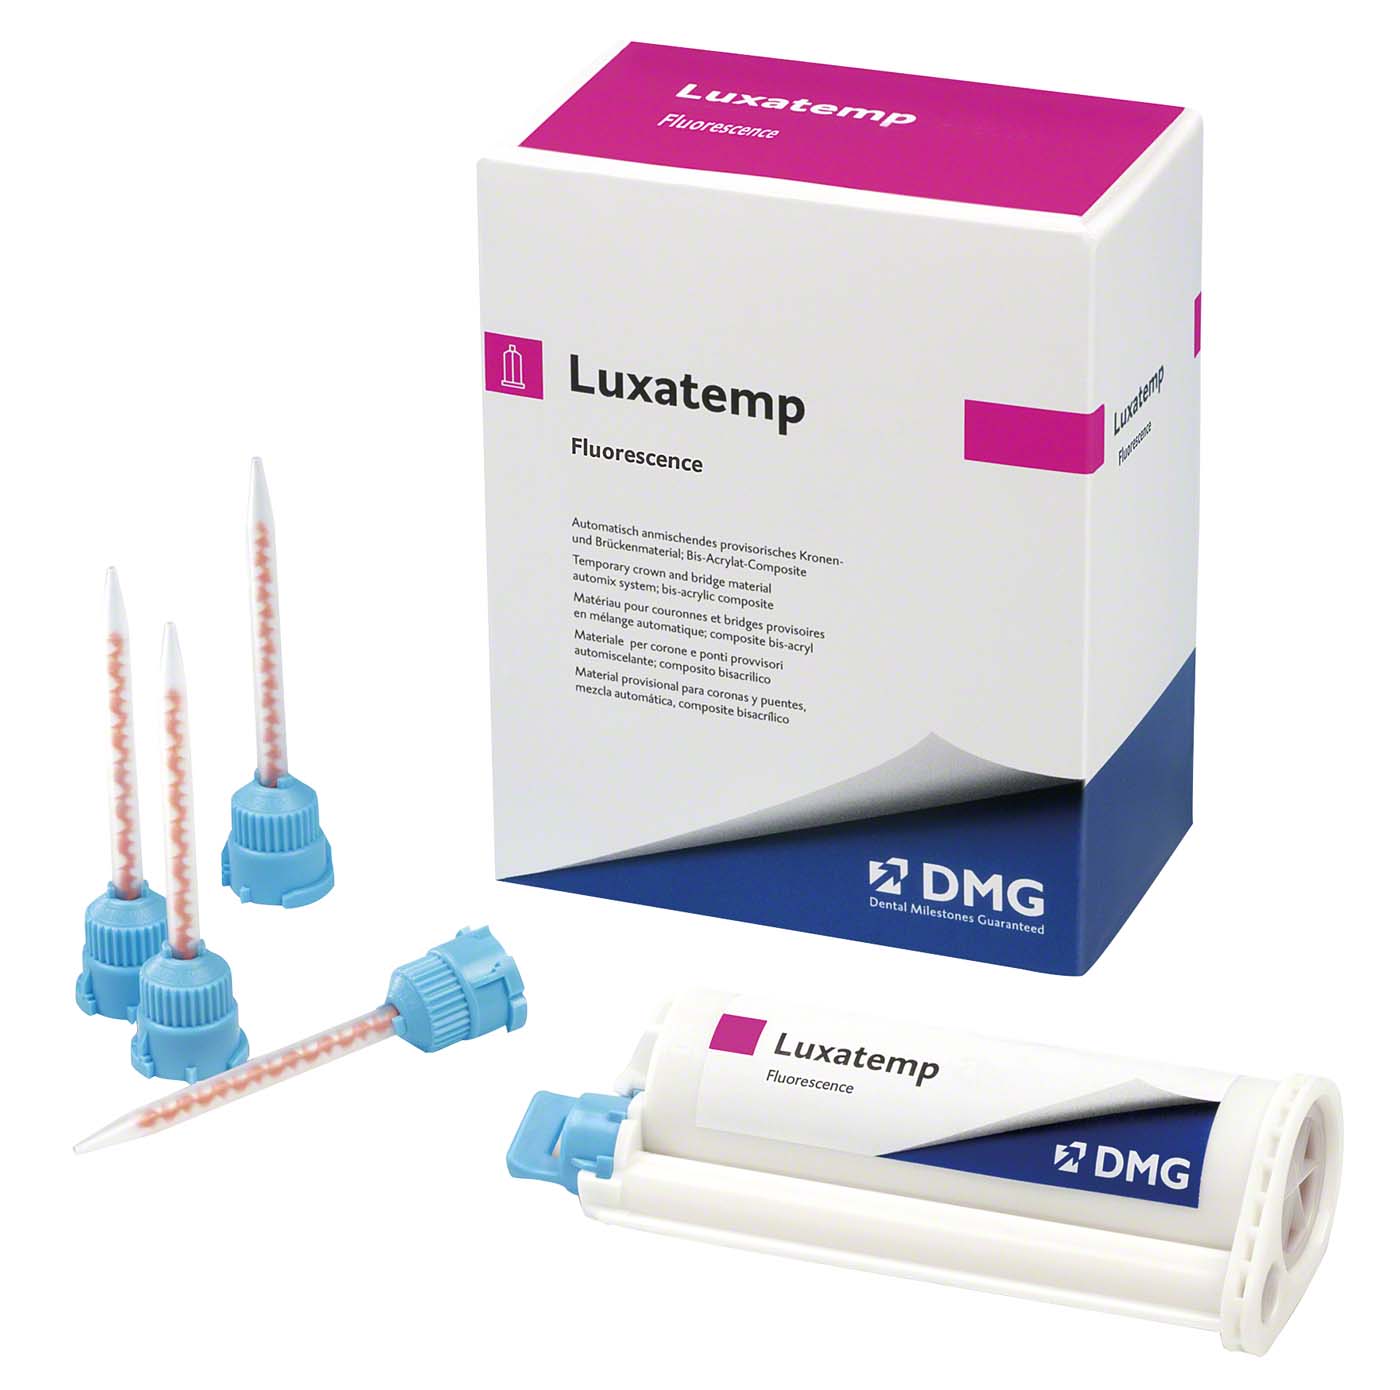 Luxatemp® Fluorescence DMG